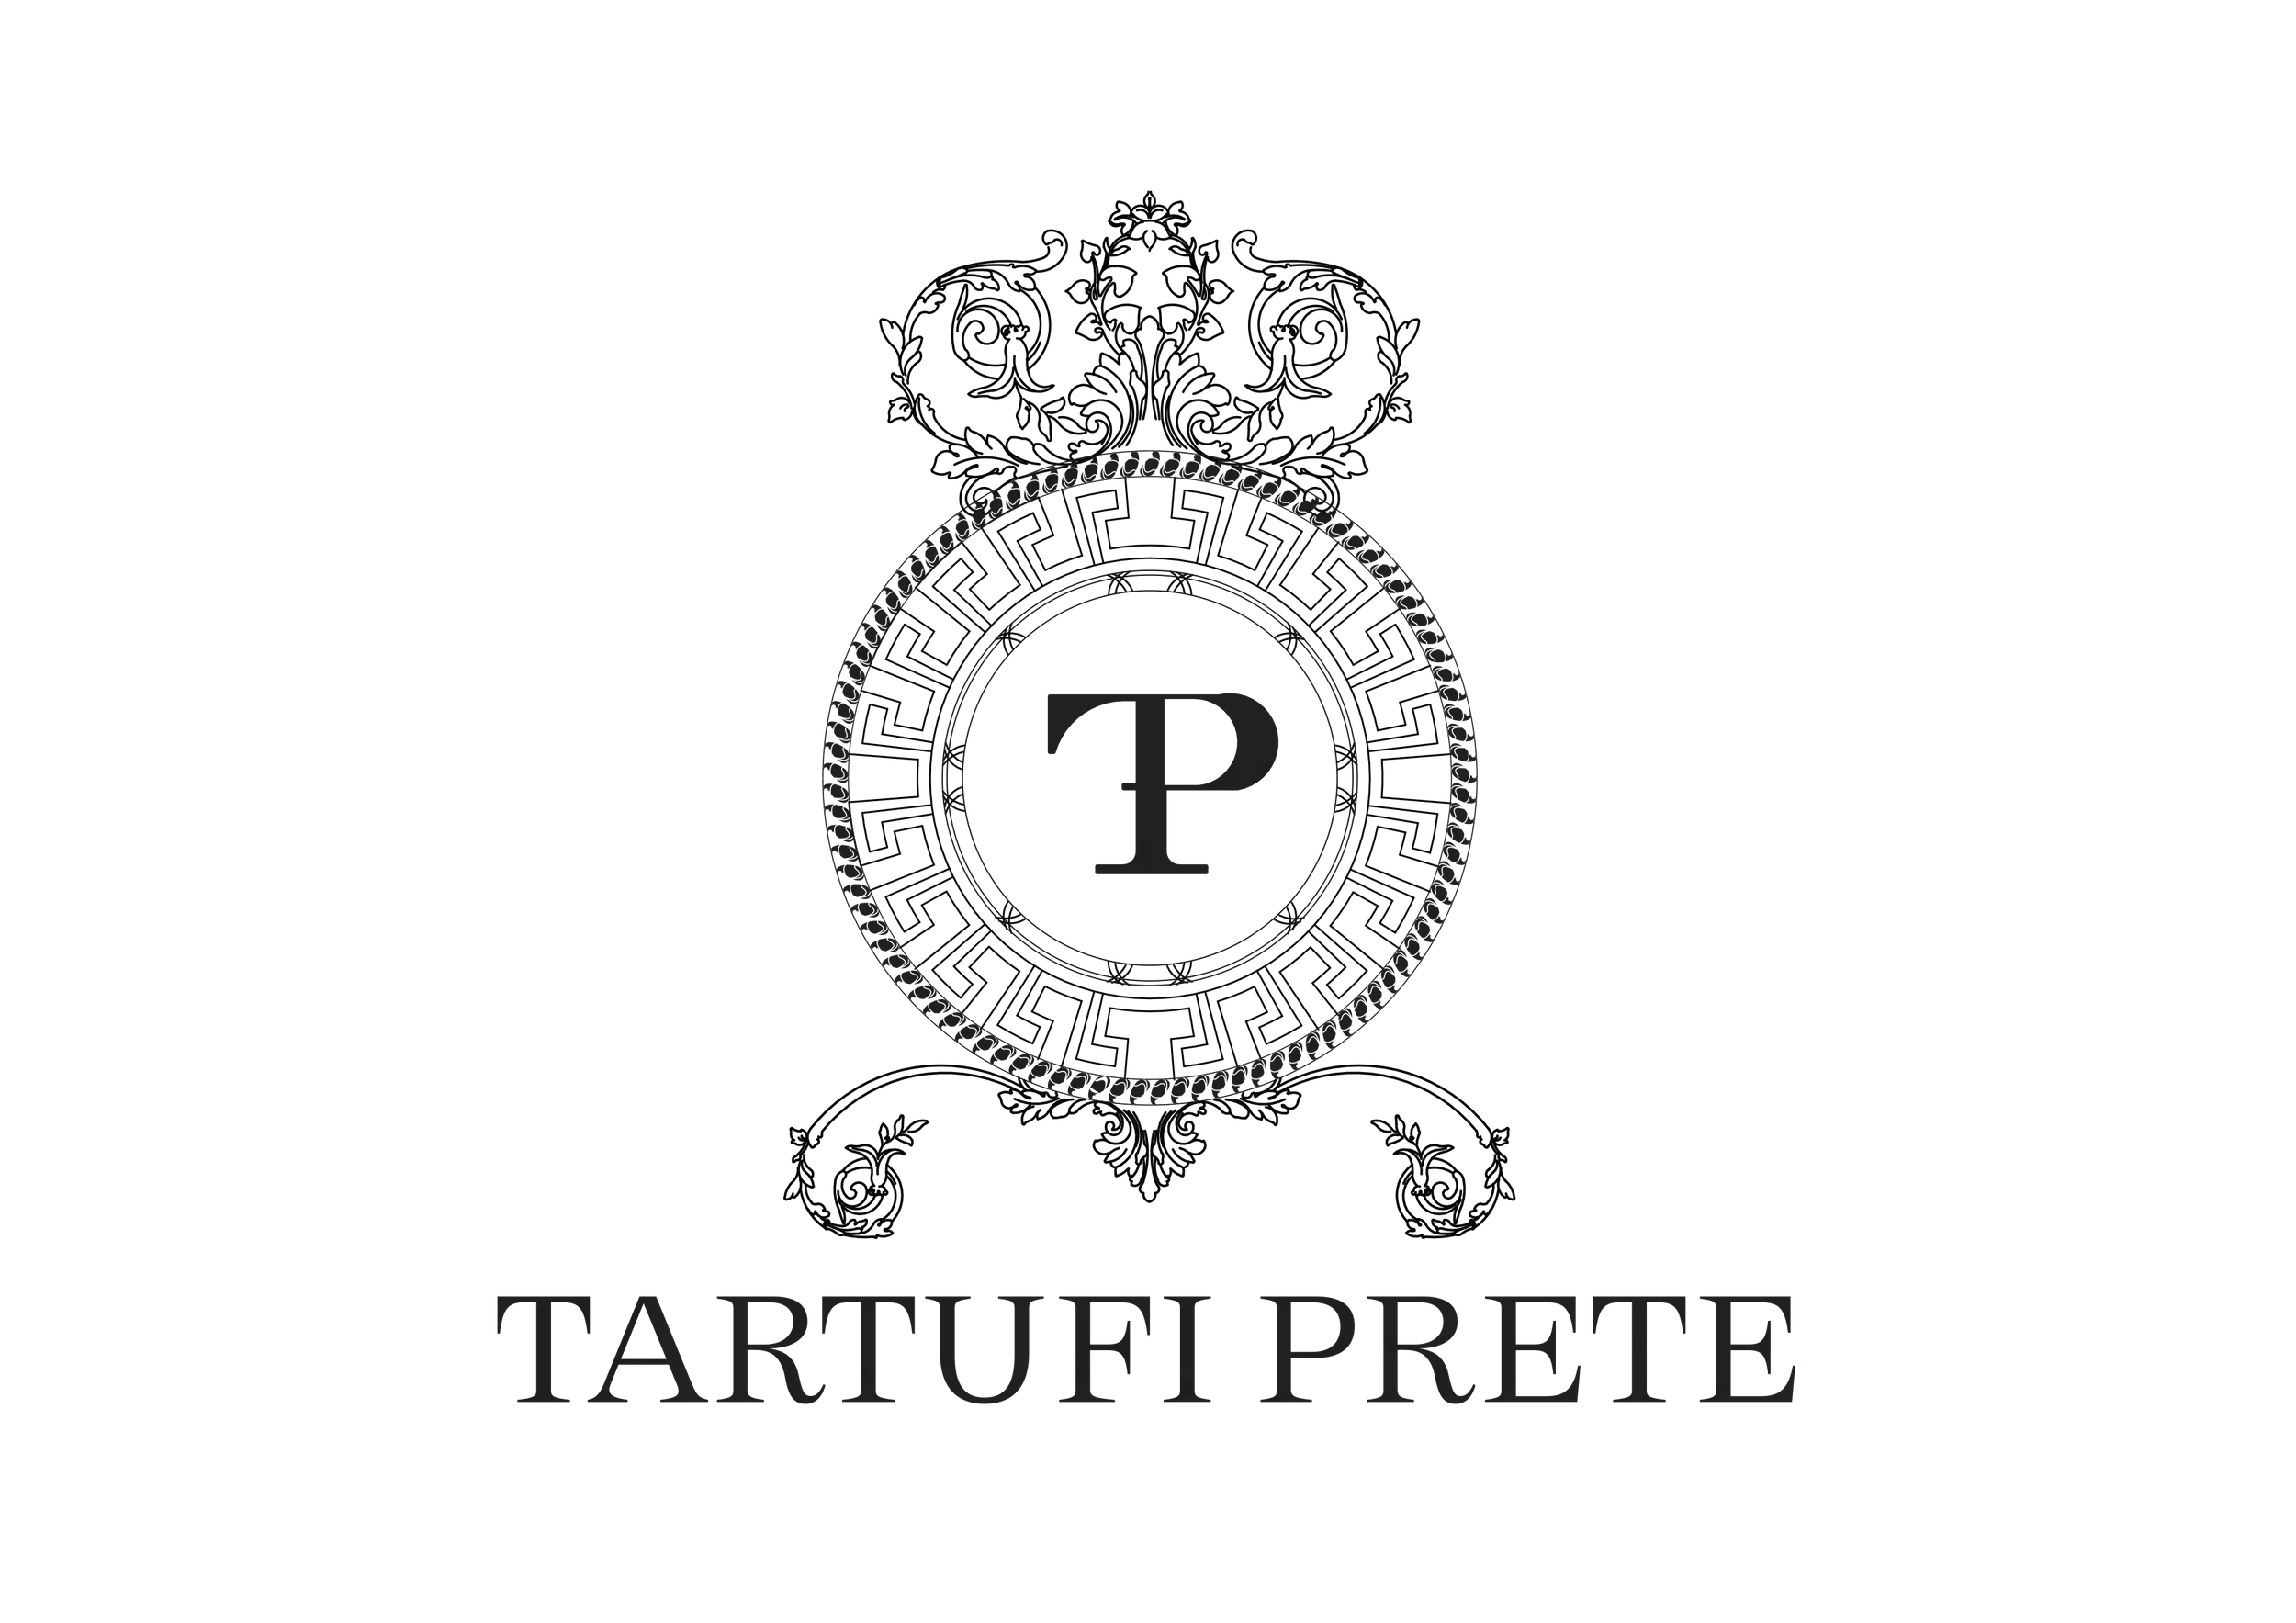 Tartufi Prete